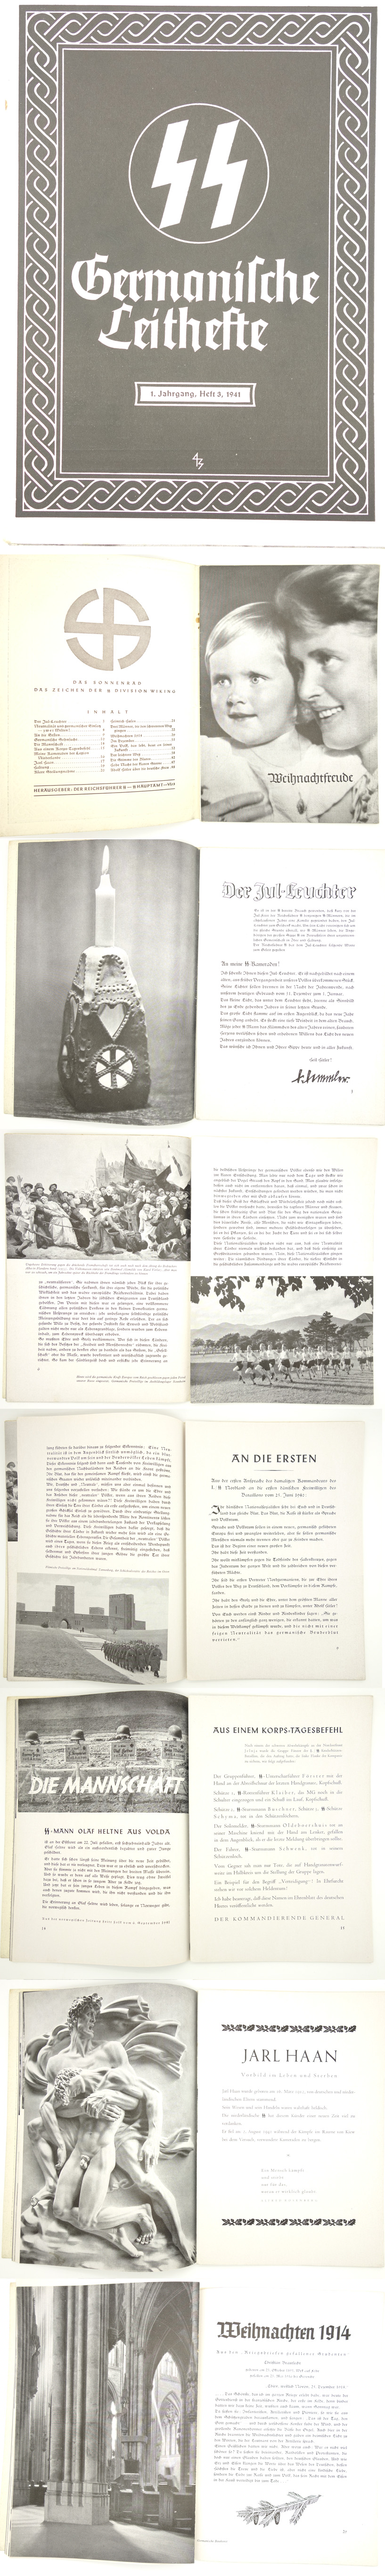 Germanische Leithefte Issue 3 1943